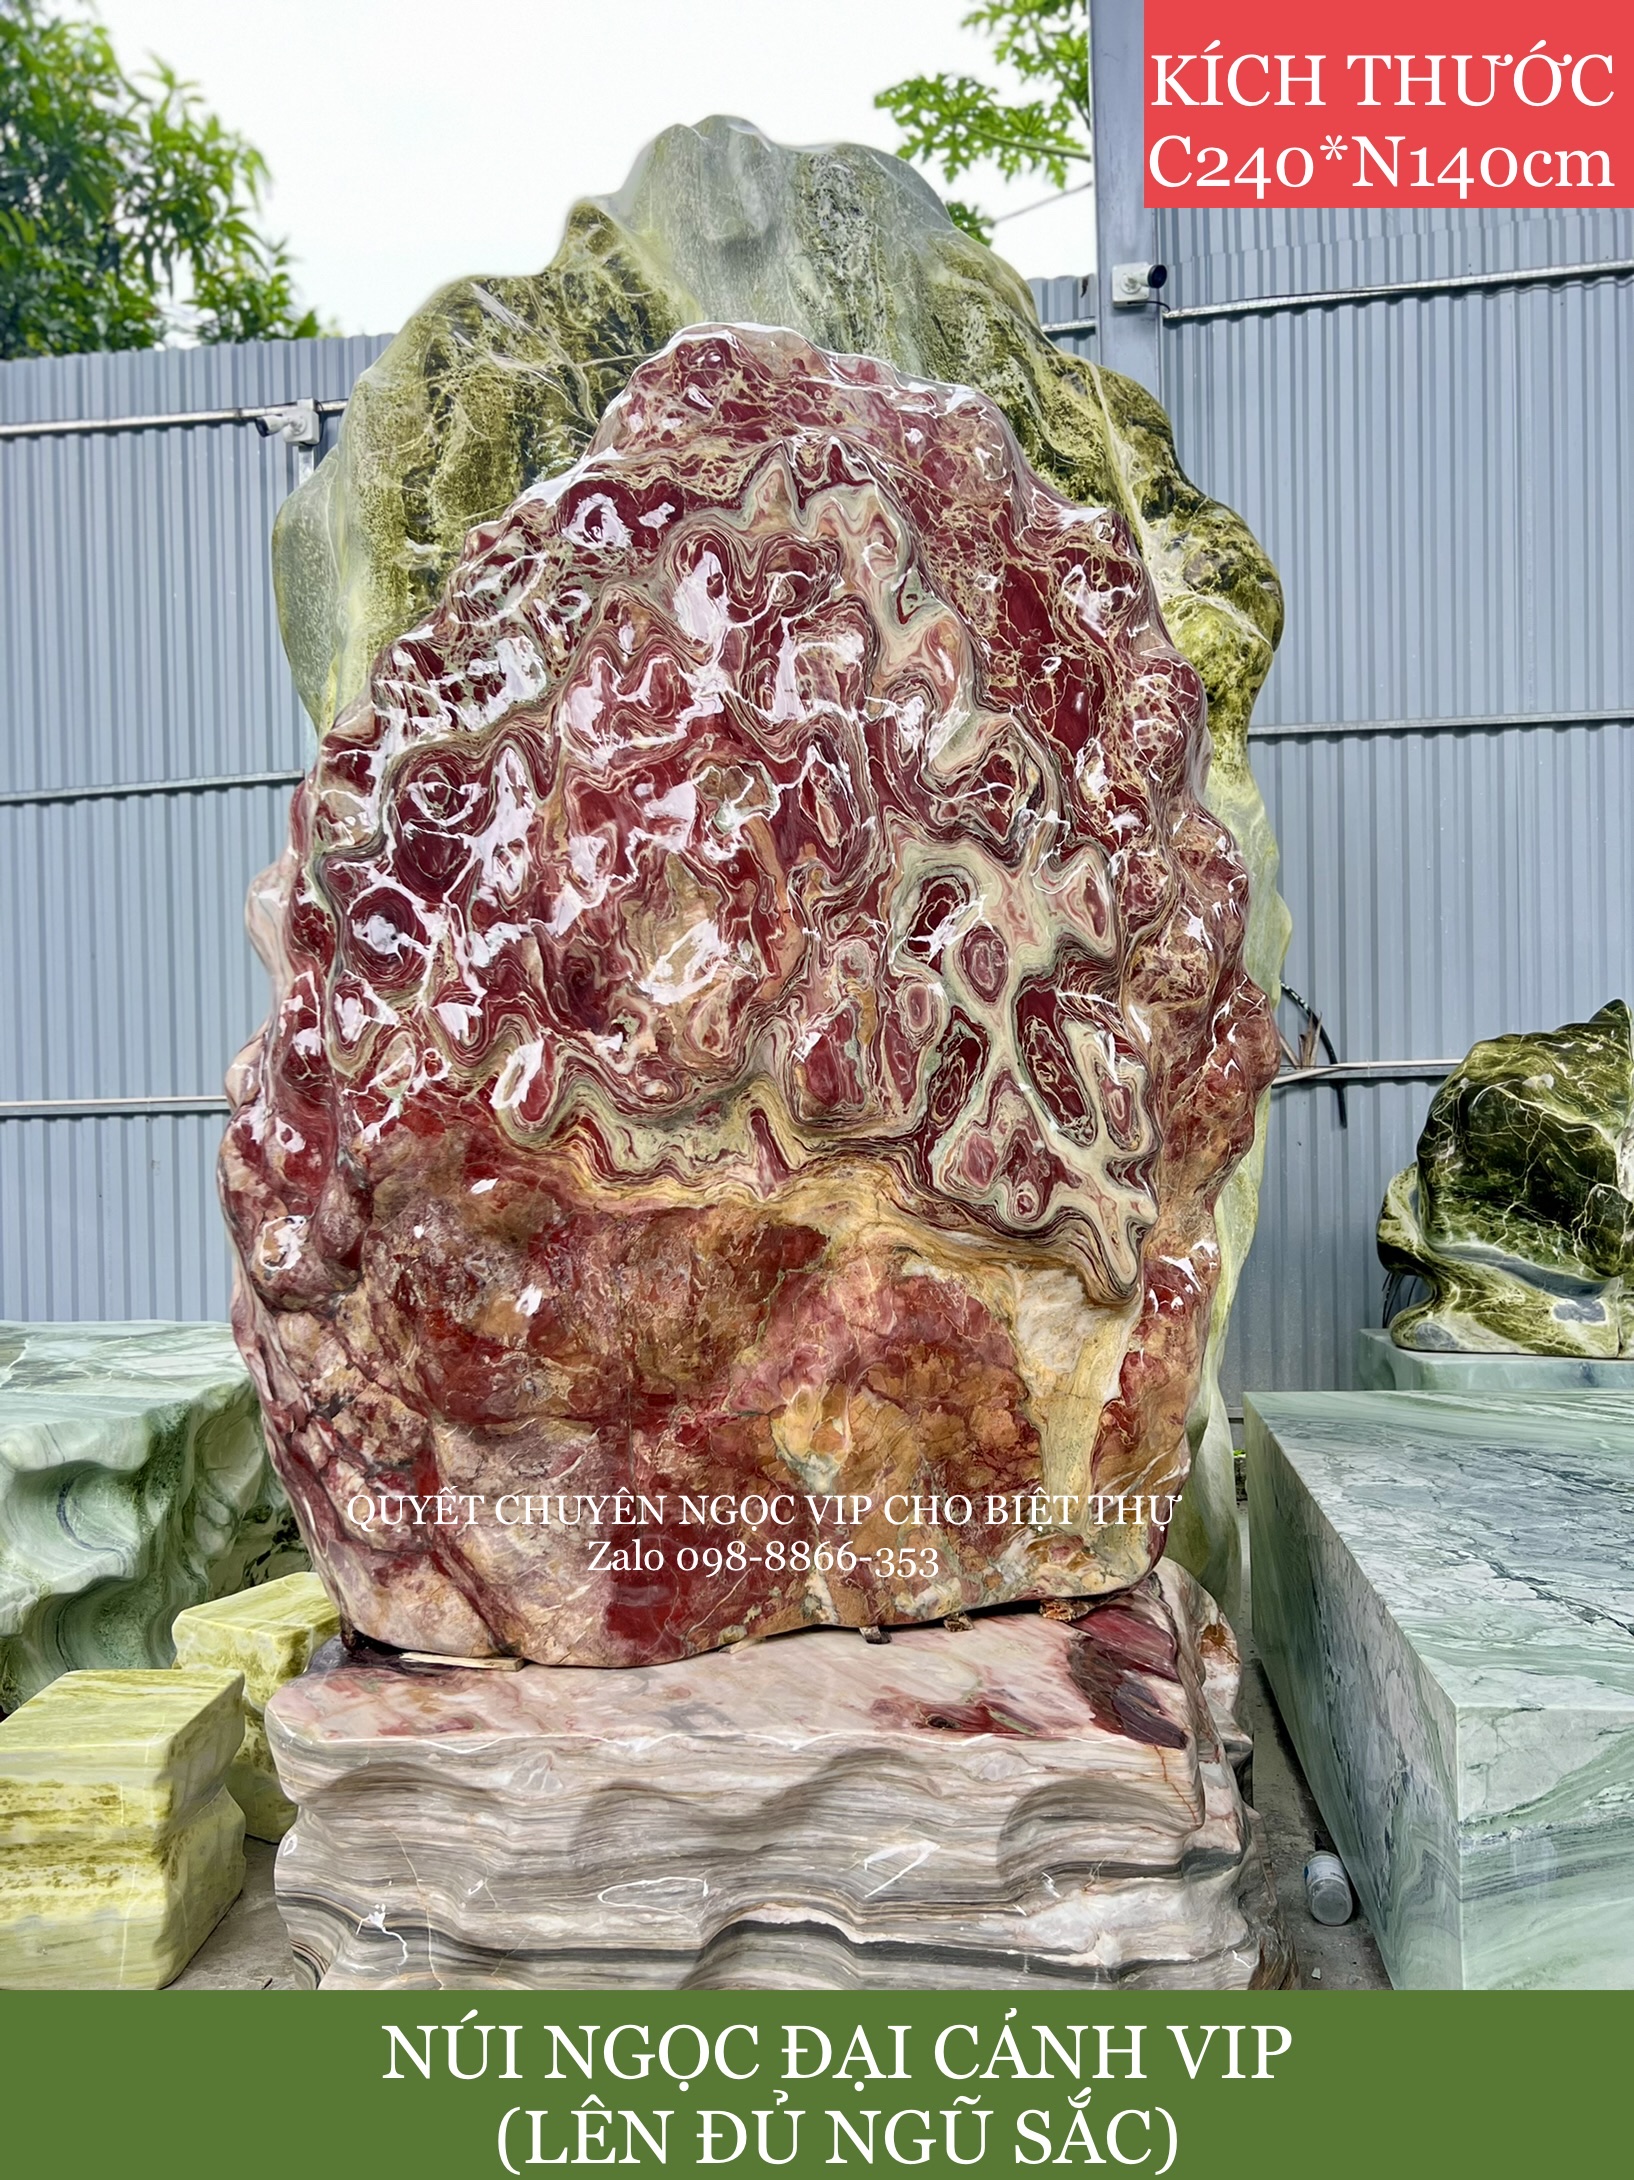 Núi Đá Cảnh bằng đá ngọc Serpentine, phù hợp trưng tại cửa Công ty, Sân vườn biệt thự